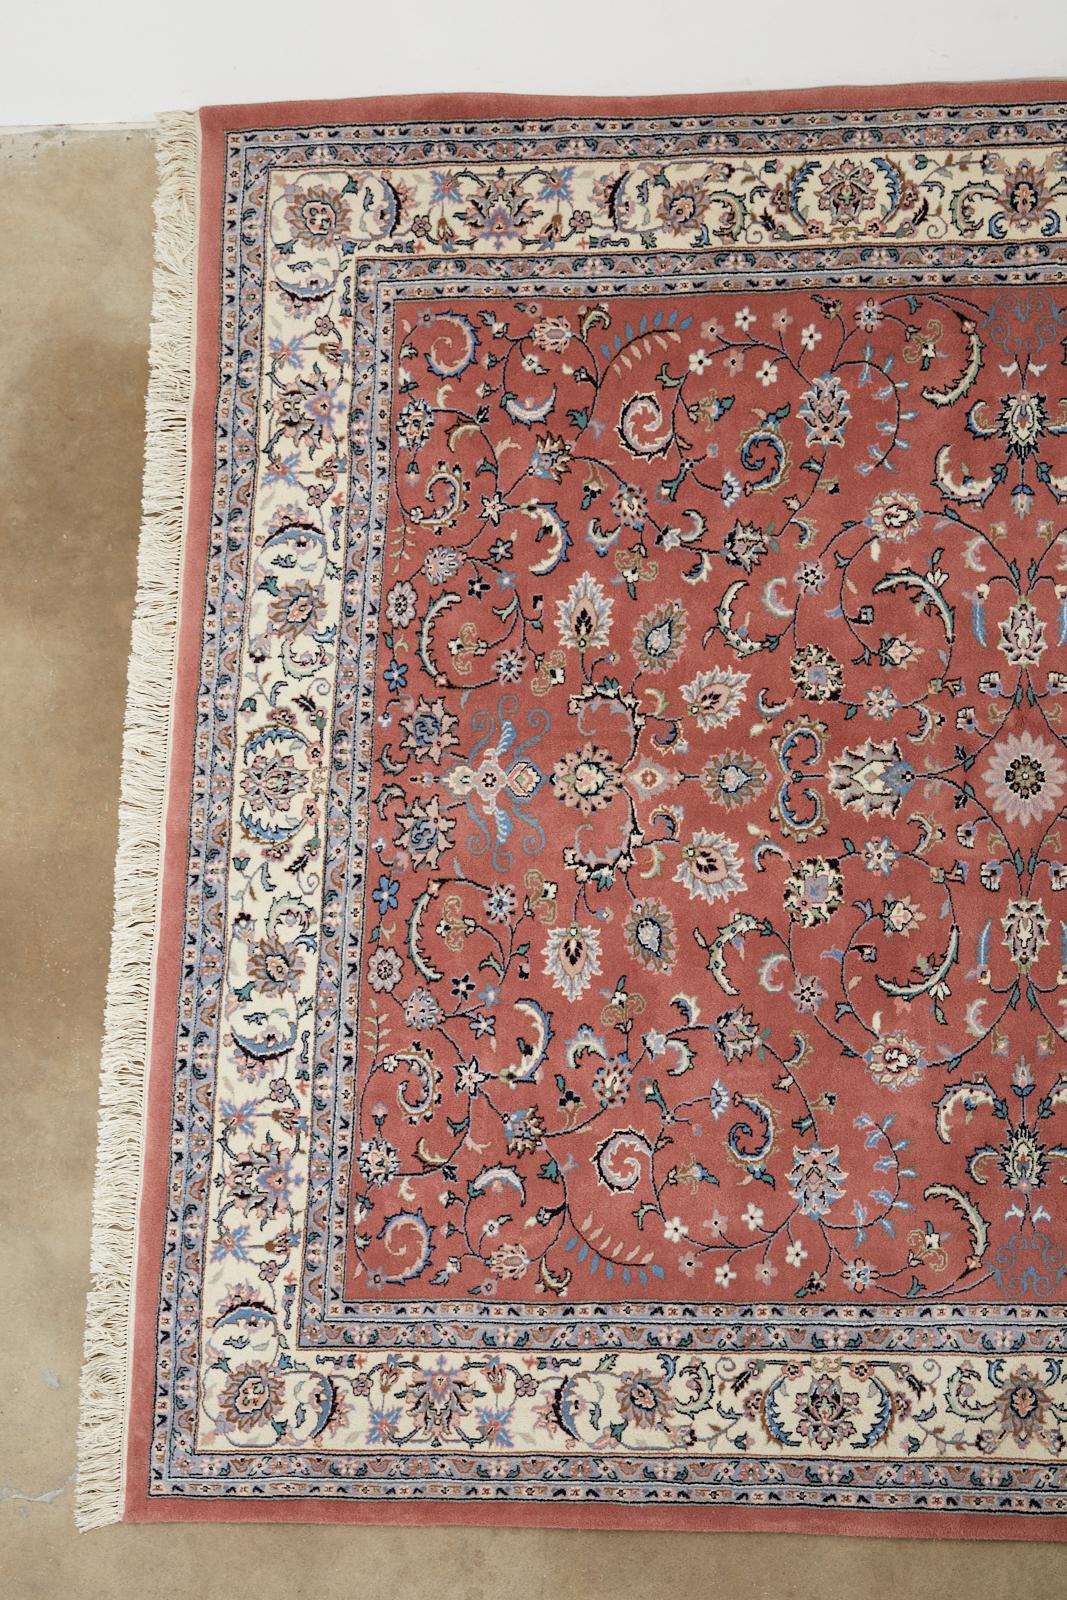 Feiner handgeknüpfter Wollteppich im INDO- persischen Kashan-Stil mit einem farbenfrohen, einzigartigen Himbeerfeld. Der Teppich ist mit klassischen, floralen Rankenmotiven und Palmetten verziert. Schönes, offenes Muster, das die lebhaften Farben